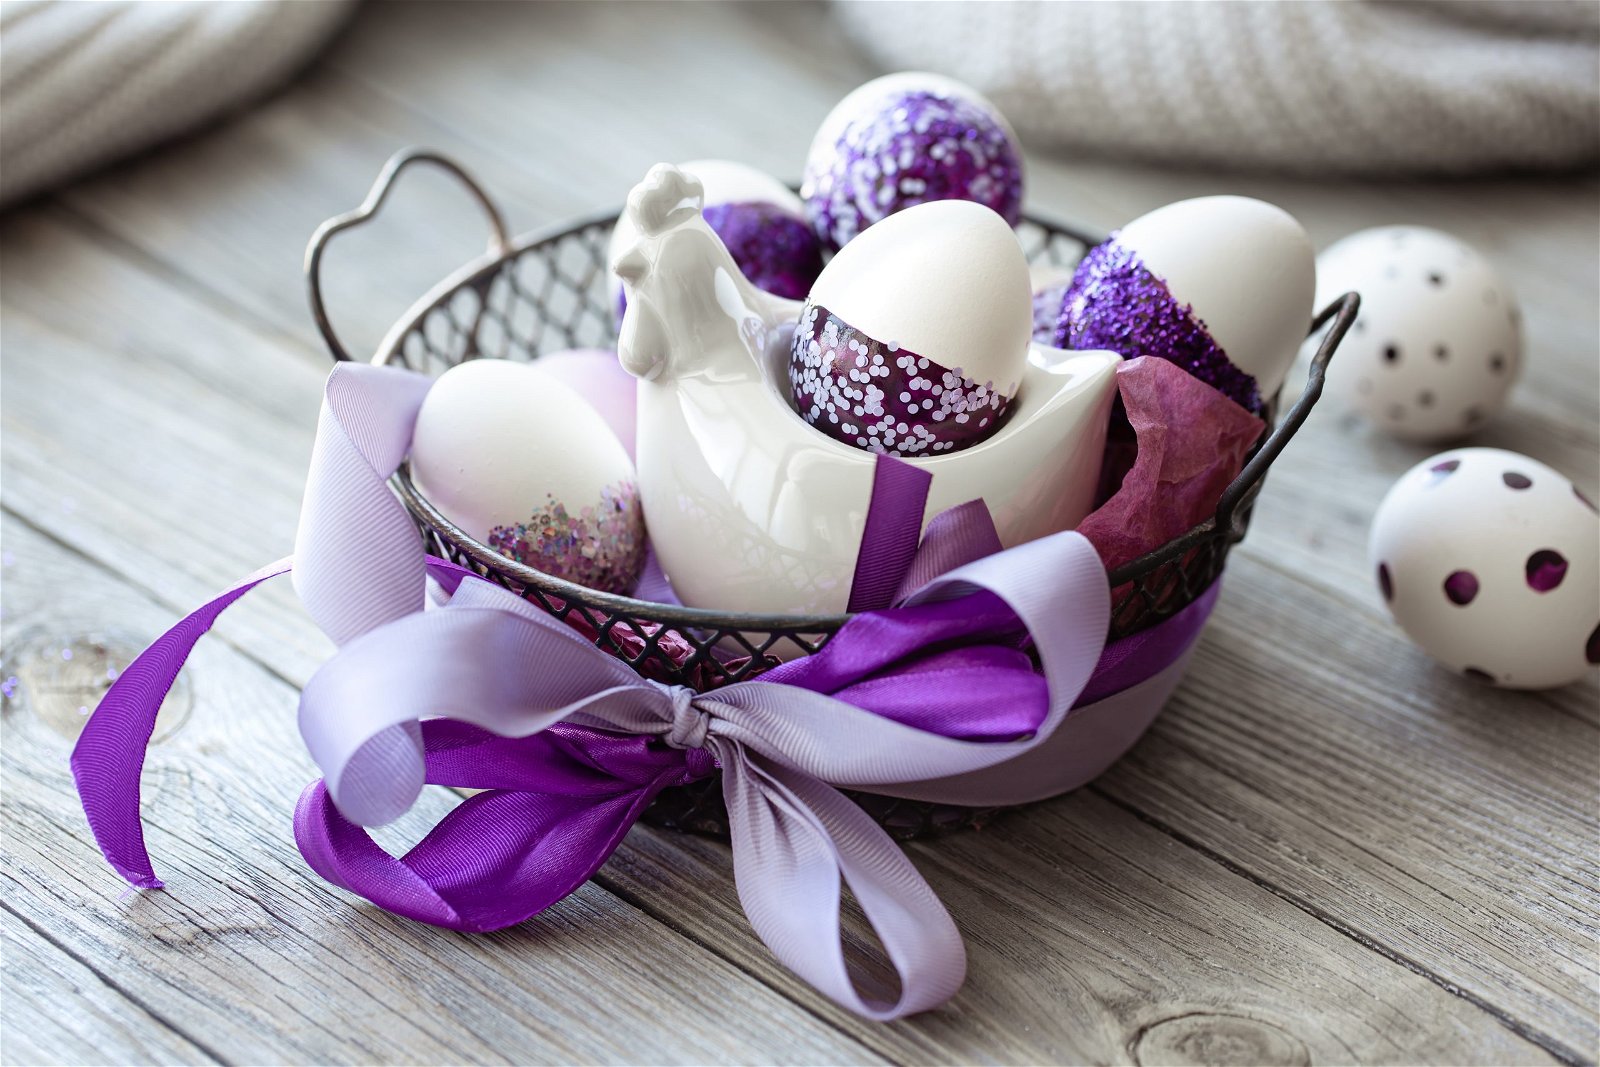 Decorazioni di Pasqua e addobbi: idee originali per la tua casa